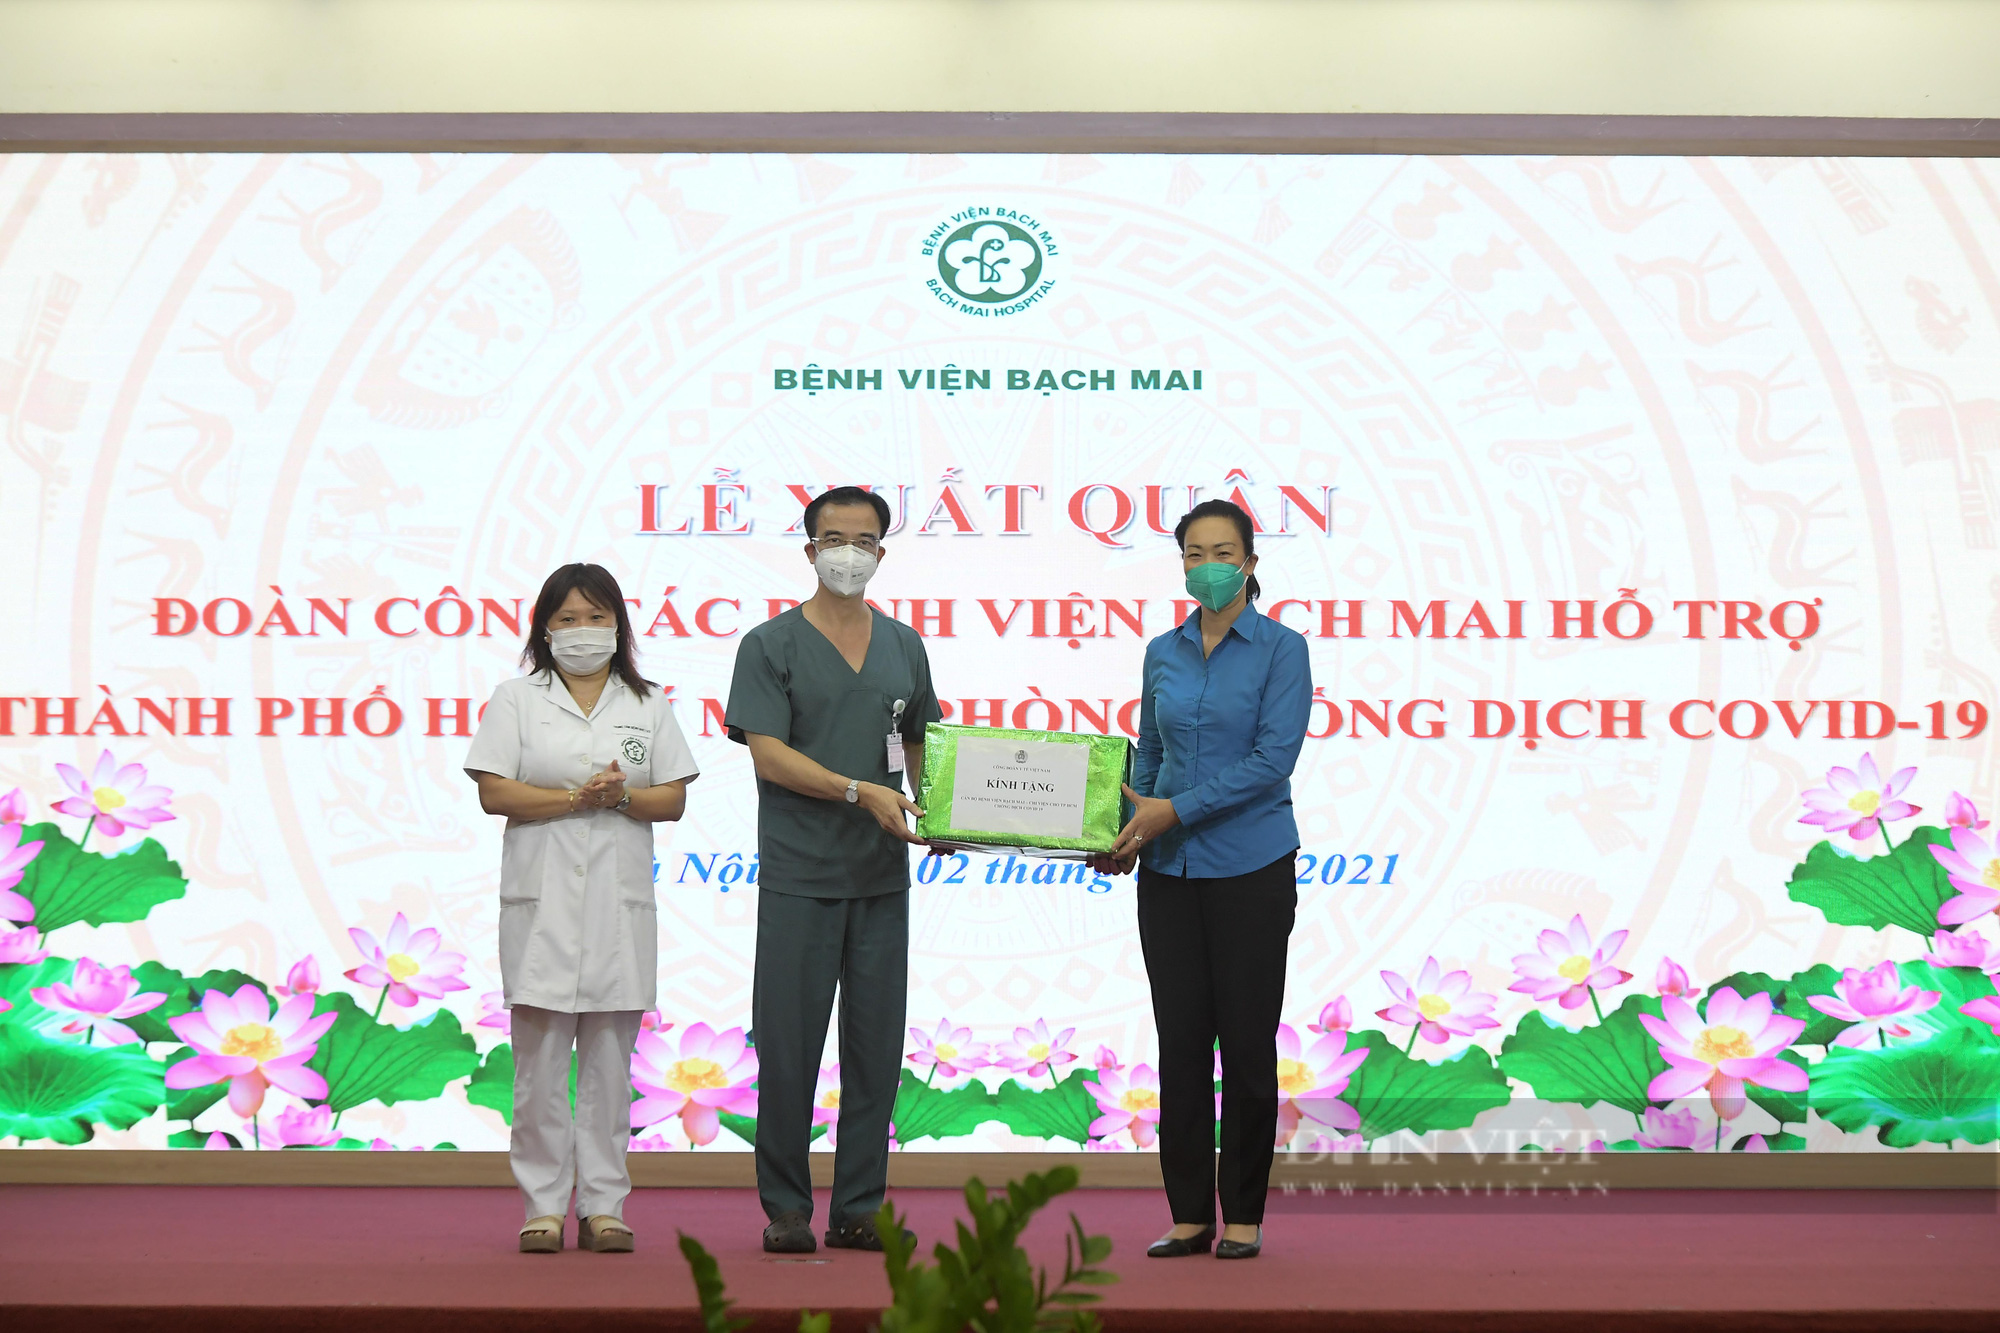 Cán bộ y tế Bệnh viện Bạch mai lên đường hỗ trợ TP. Hồ Chí Minh chống dịch Covid-19 - Ảnh 1.